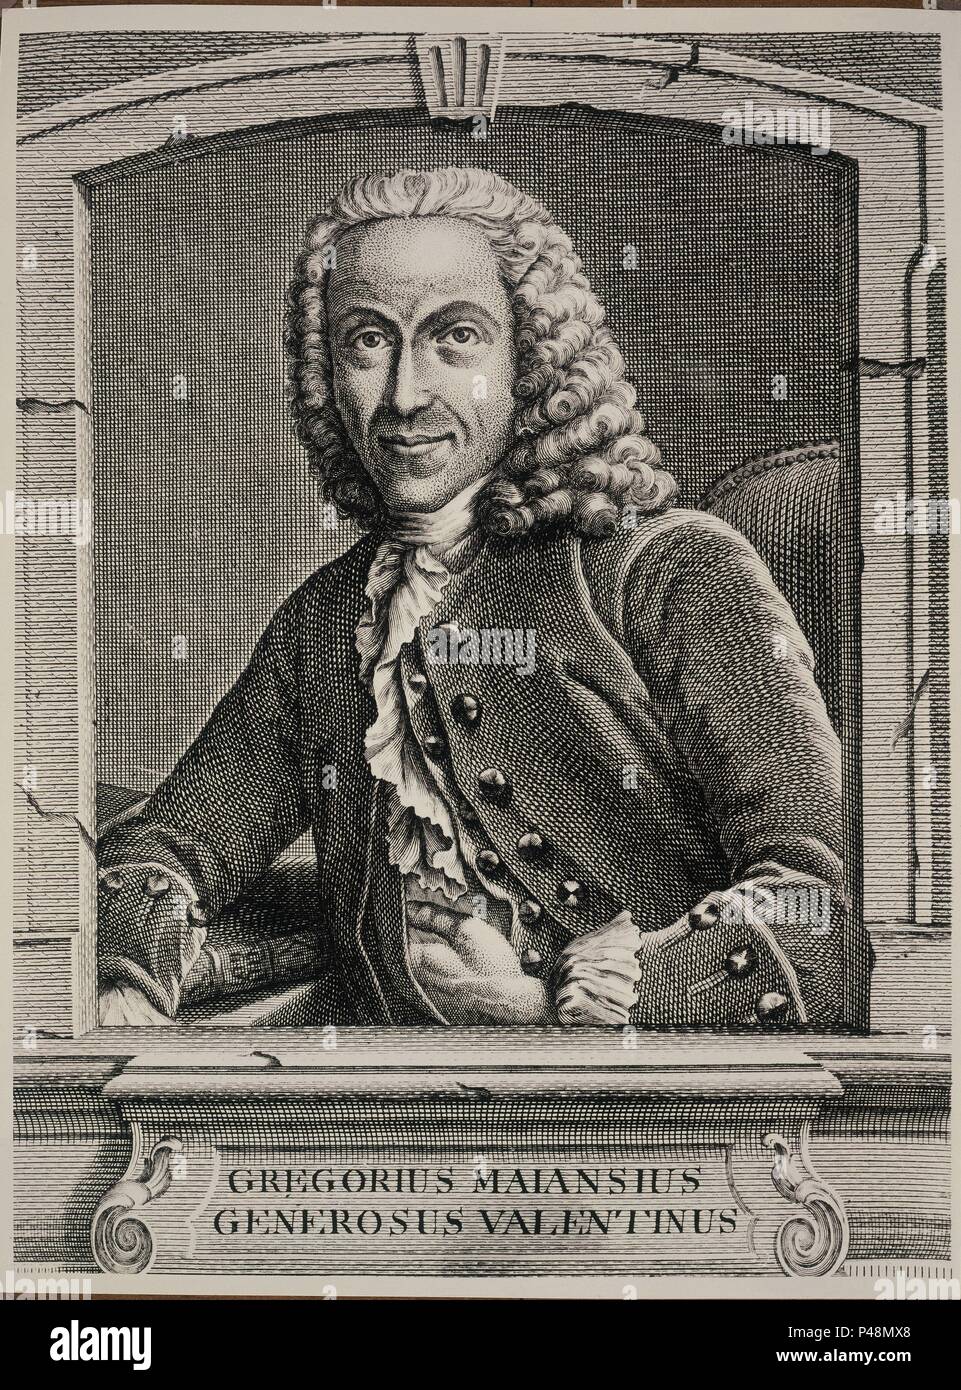 GREGORIO MAYANS (1699-1781) - ILUSTRADO VALENCIANO ABOGADO  FILOSOFO  Y BIBLIOTECARIO. Location: BIBLIOTECA NACIONAL-COLECCION, MADRID, SPAIN. Stock Photo